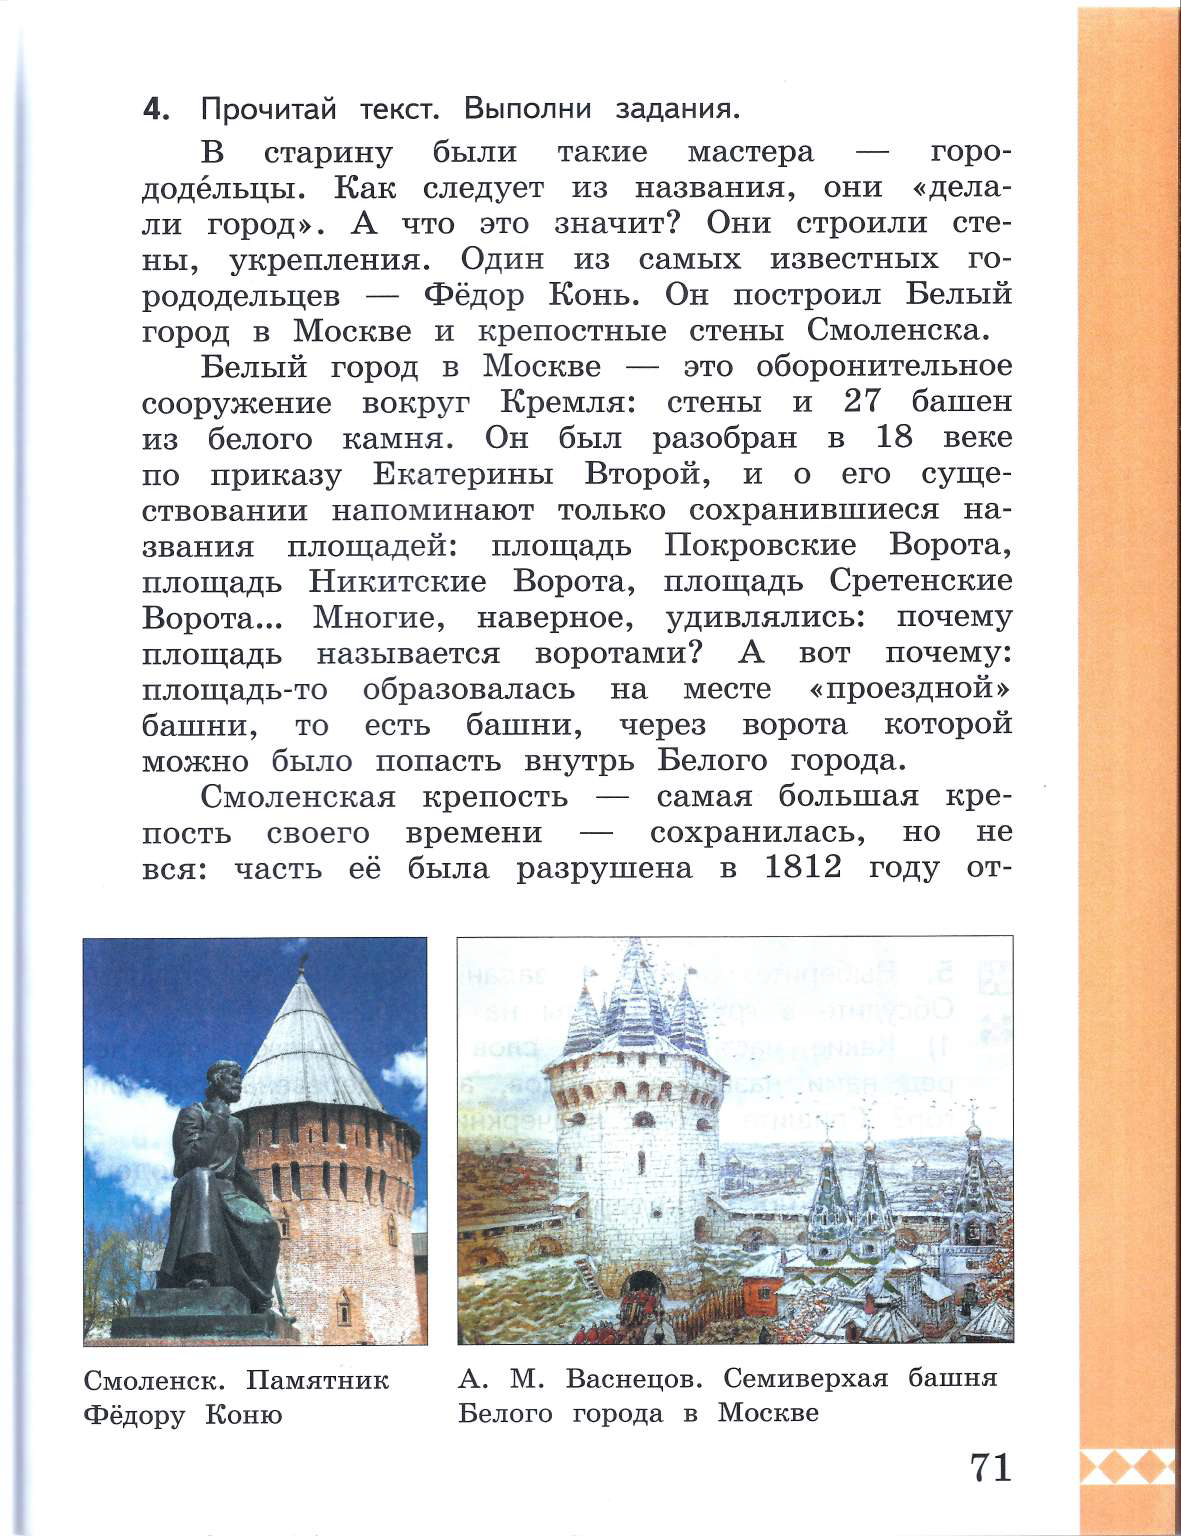 Семиверхая башня белого города в Москве. Семиверхая башня Васнецов. Семиверхая башня почему так называется. Почему башню назвали